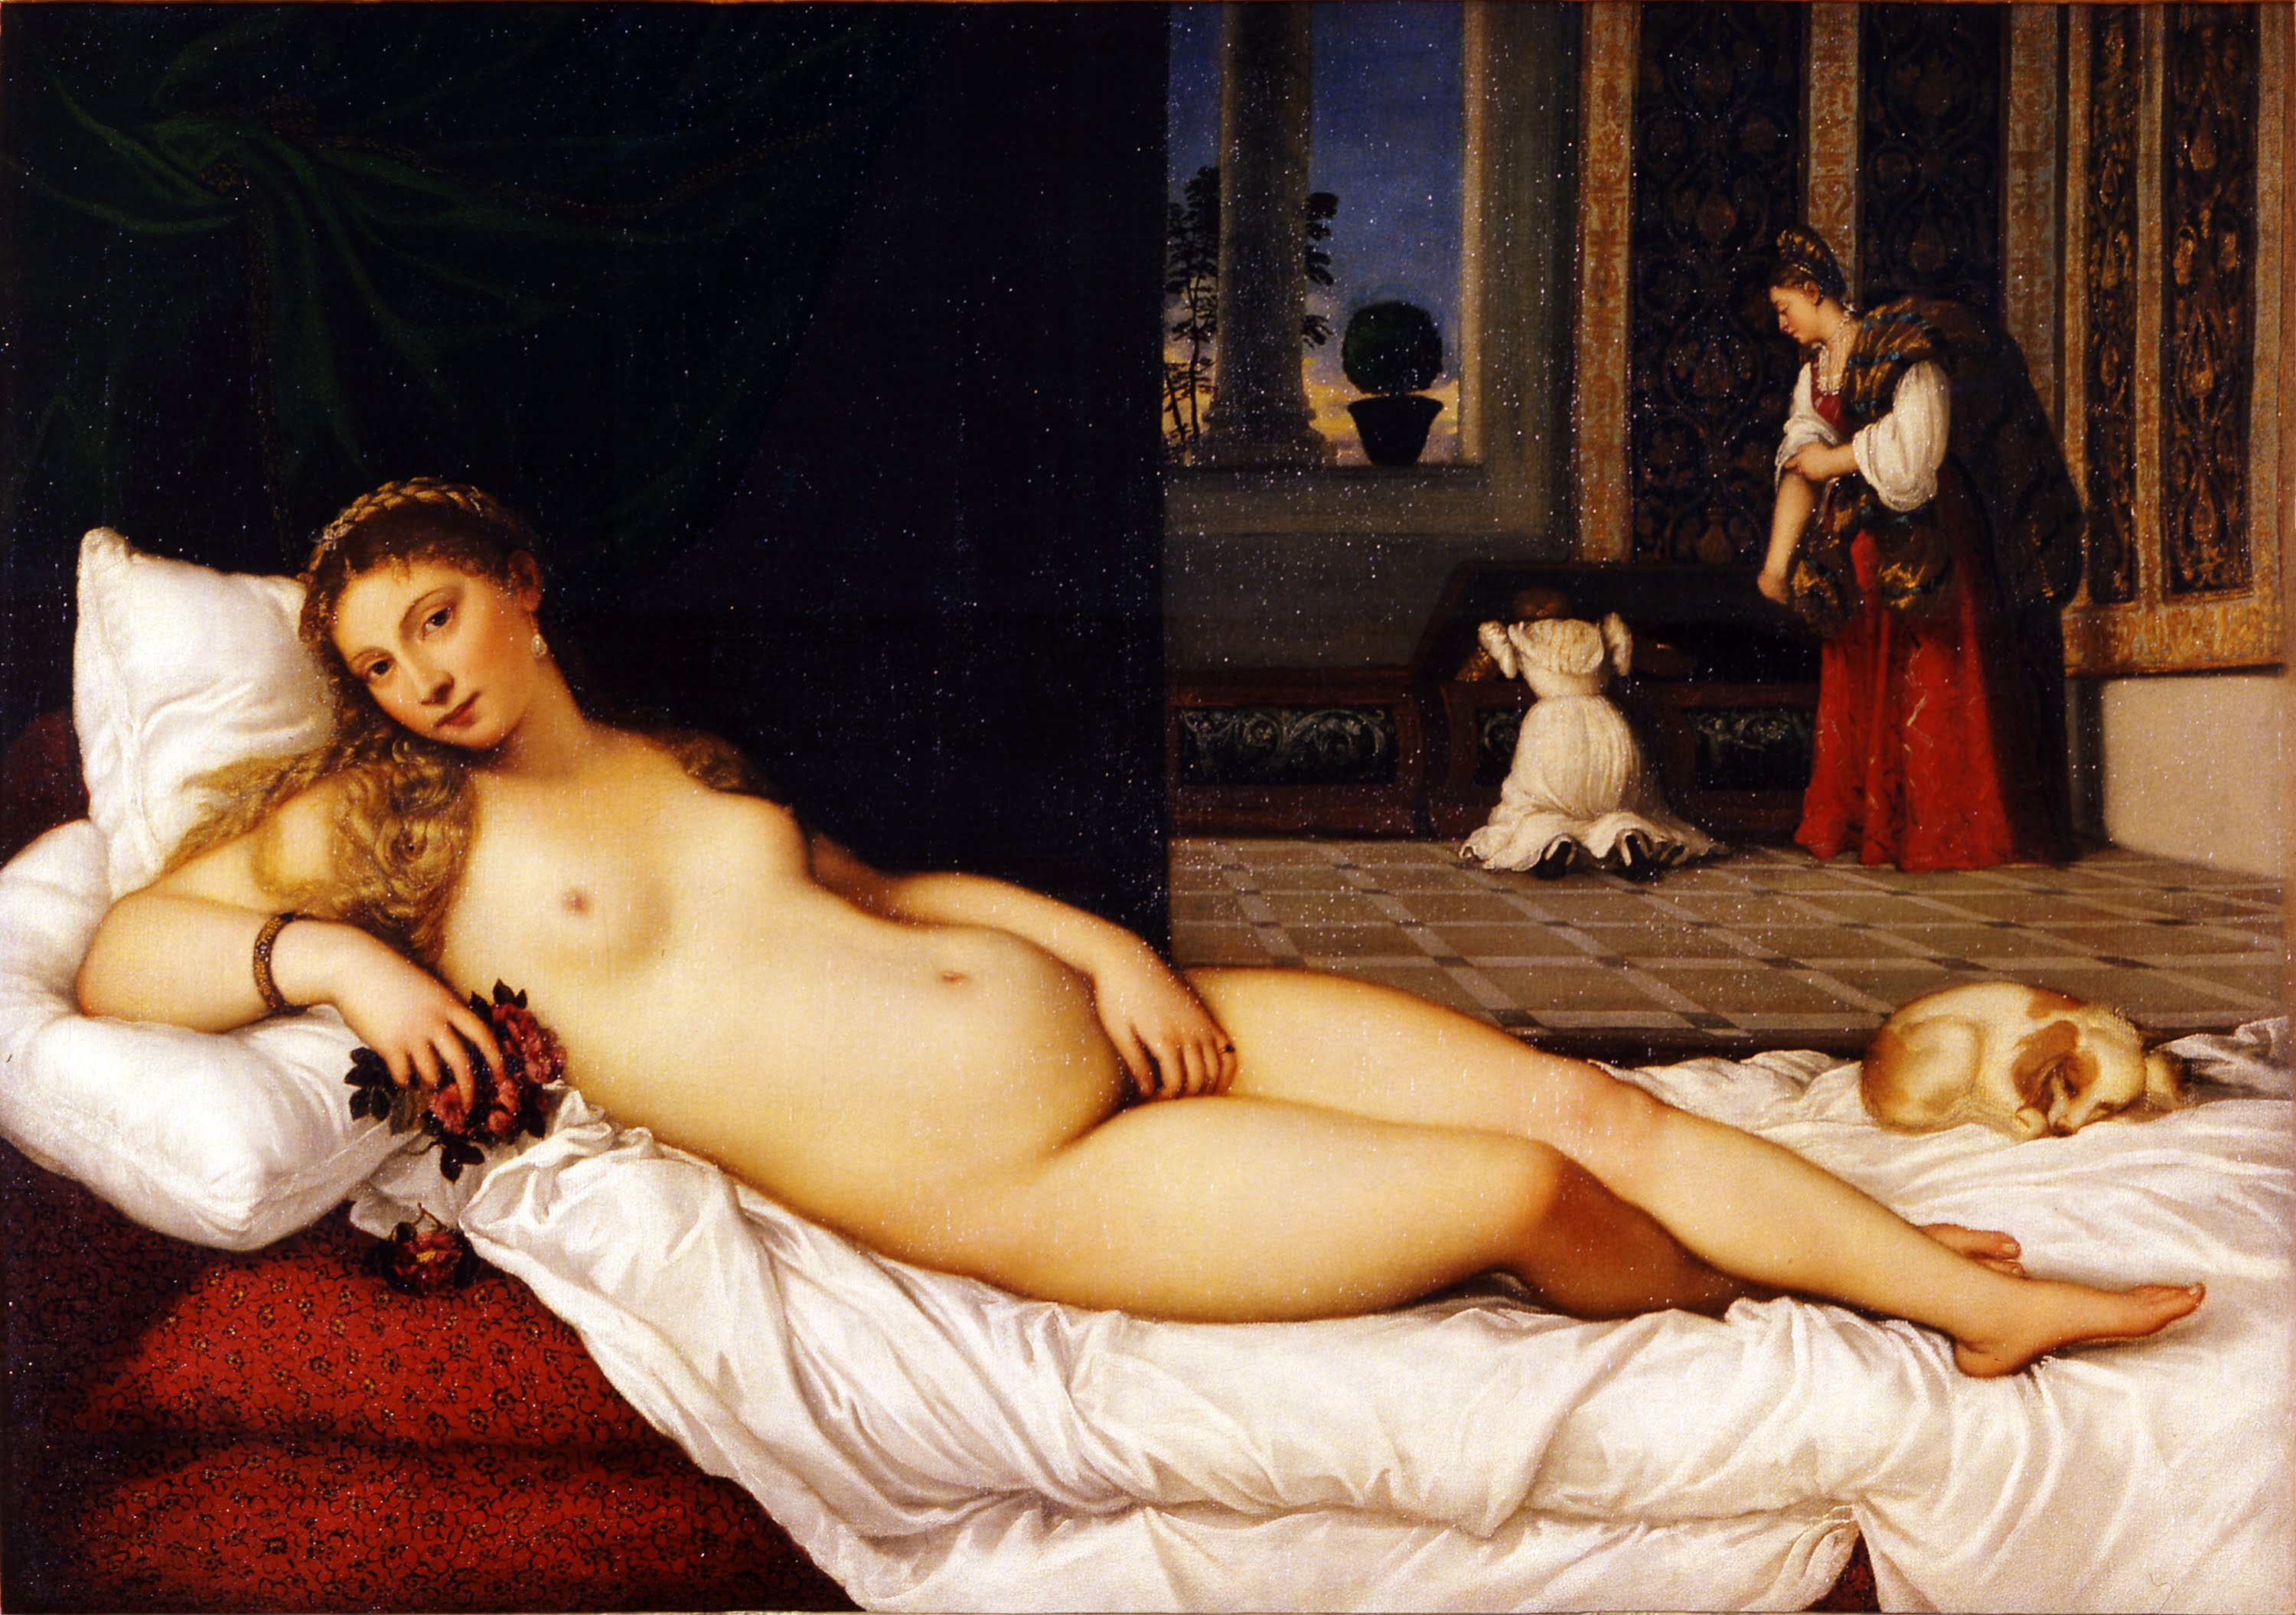 Venus din Urbino by  Titian - 1538 - 119.20 x 165.50 cm 